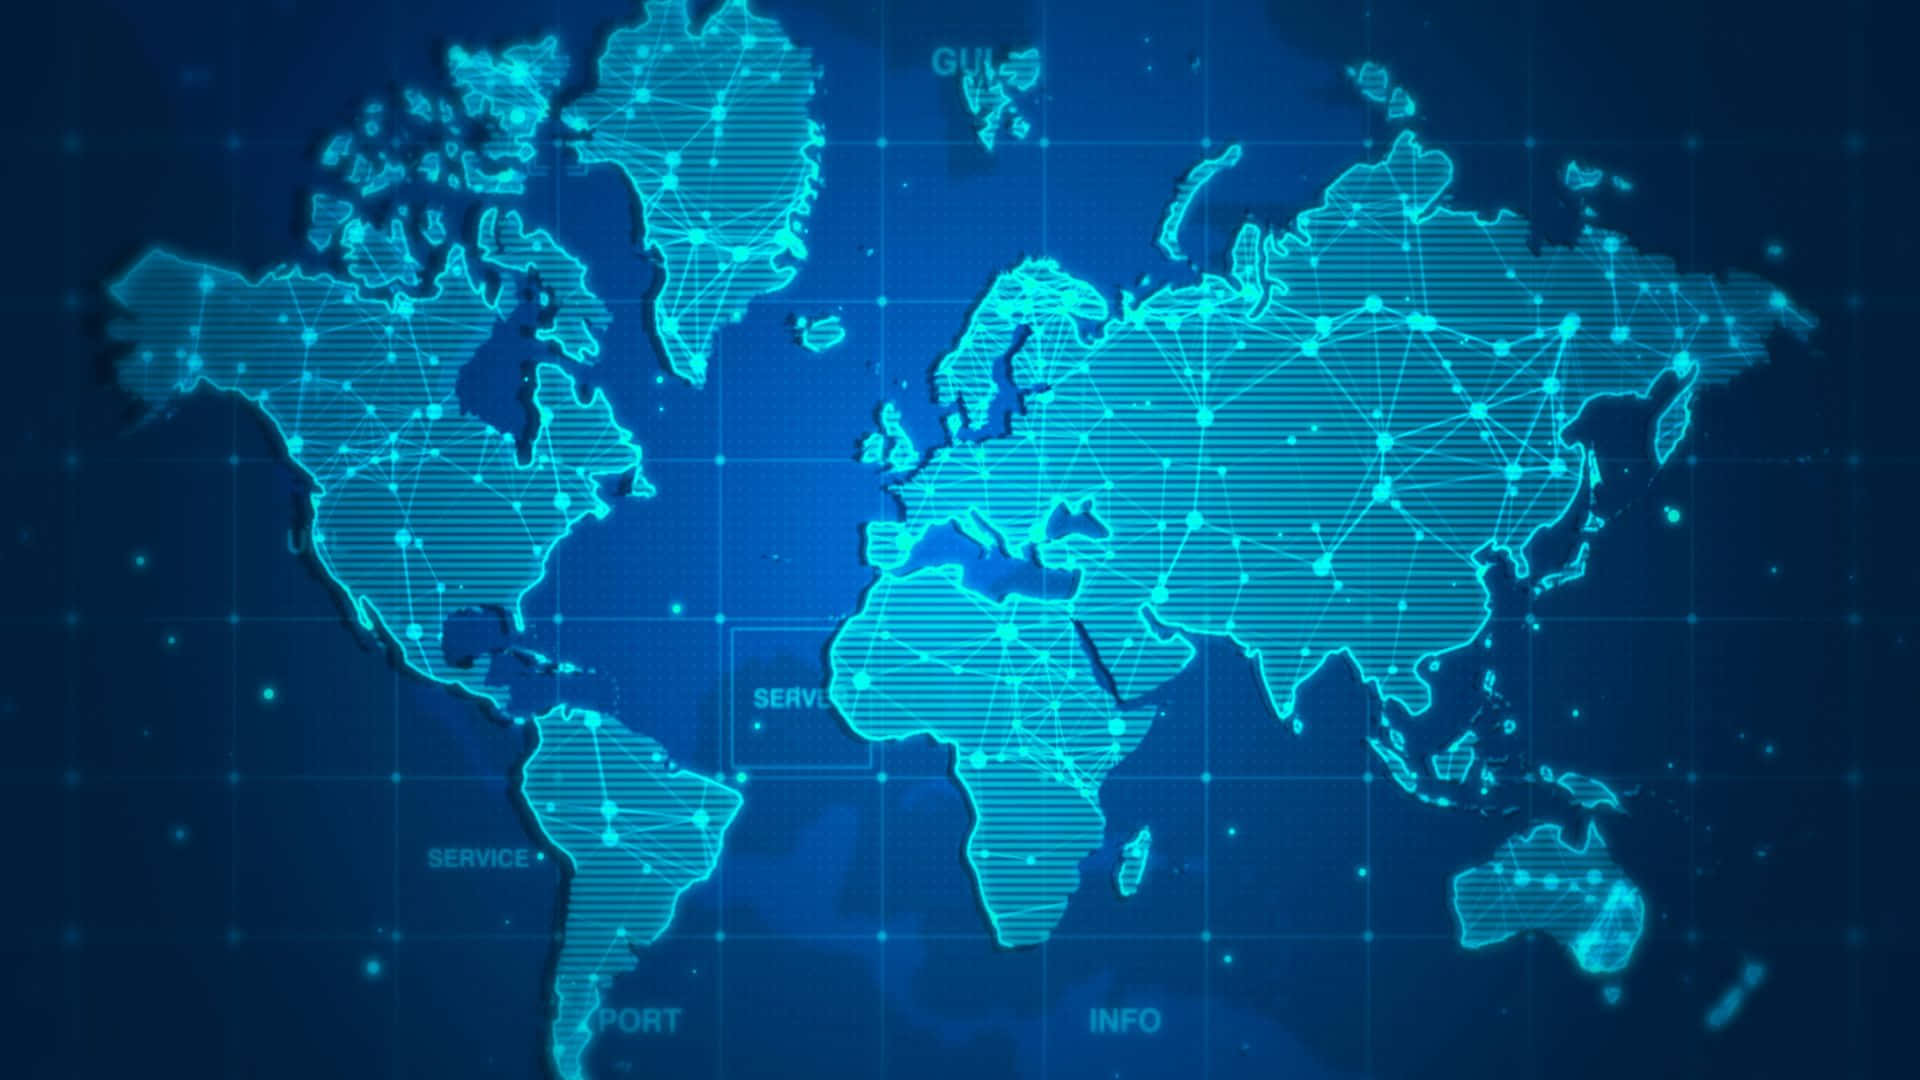 Fondode Pantalla Atrayente Con Mapa Mundial En Azul